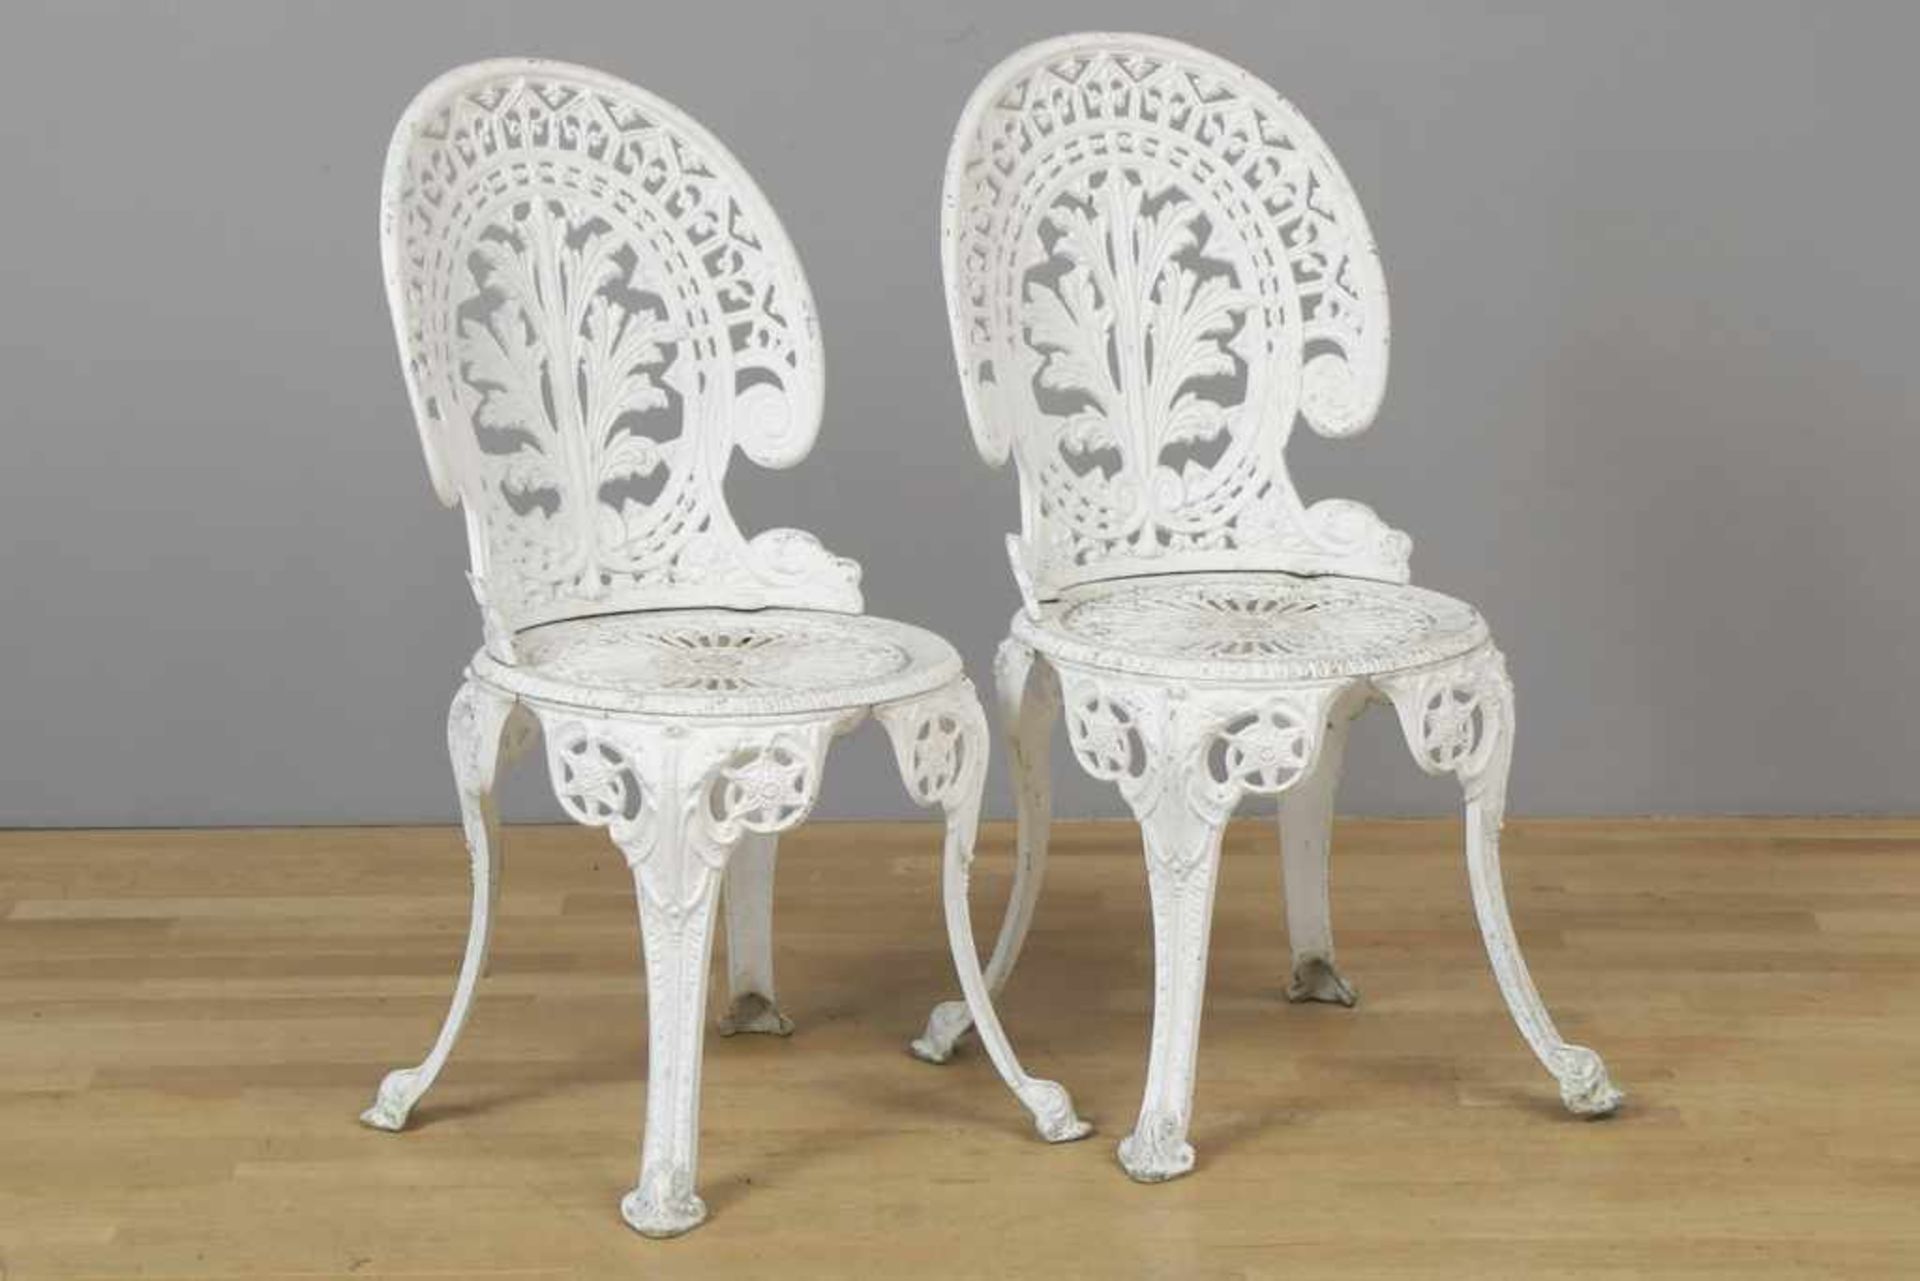 Paar Gartenstühle im viktorianischen Stil Metallguss, weiß lackiert, Medaillonrücken und runde